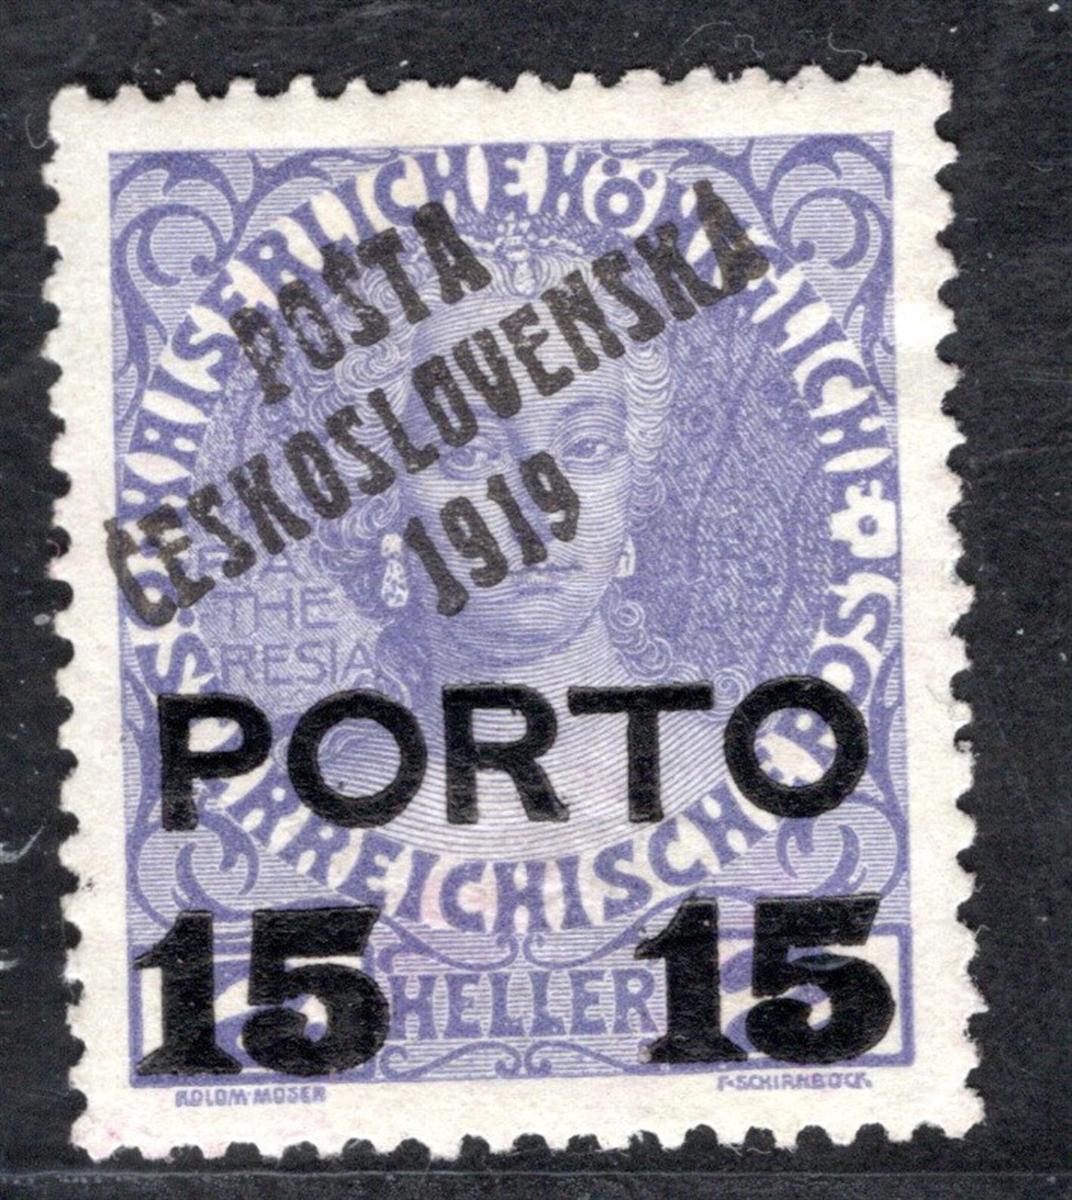 Pč 1919/84, typ II, PORTO, 15/2 fialová, zk. Gi/19.70769 - Známky Československo + ČR